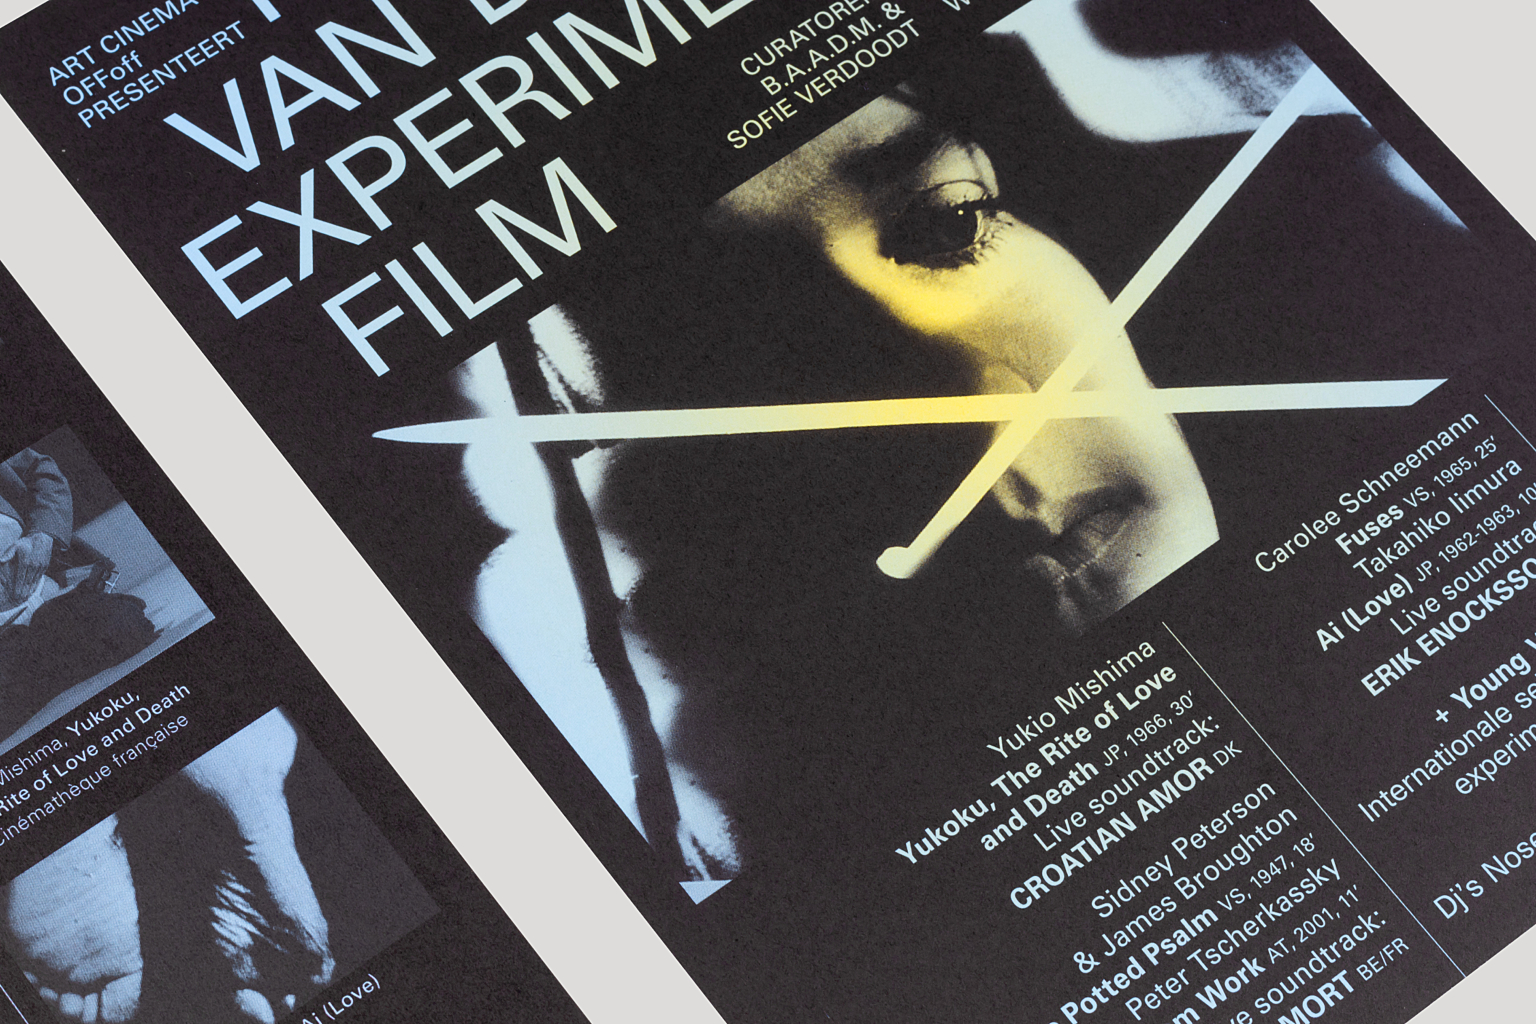 OF Foff nacht van de experimentele film 2016 flyers detail